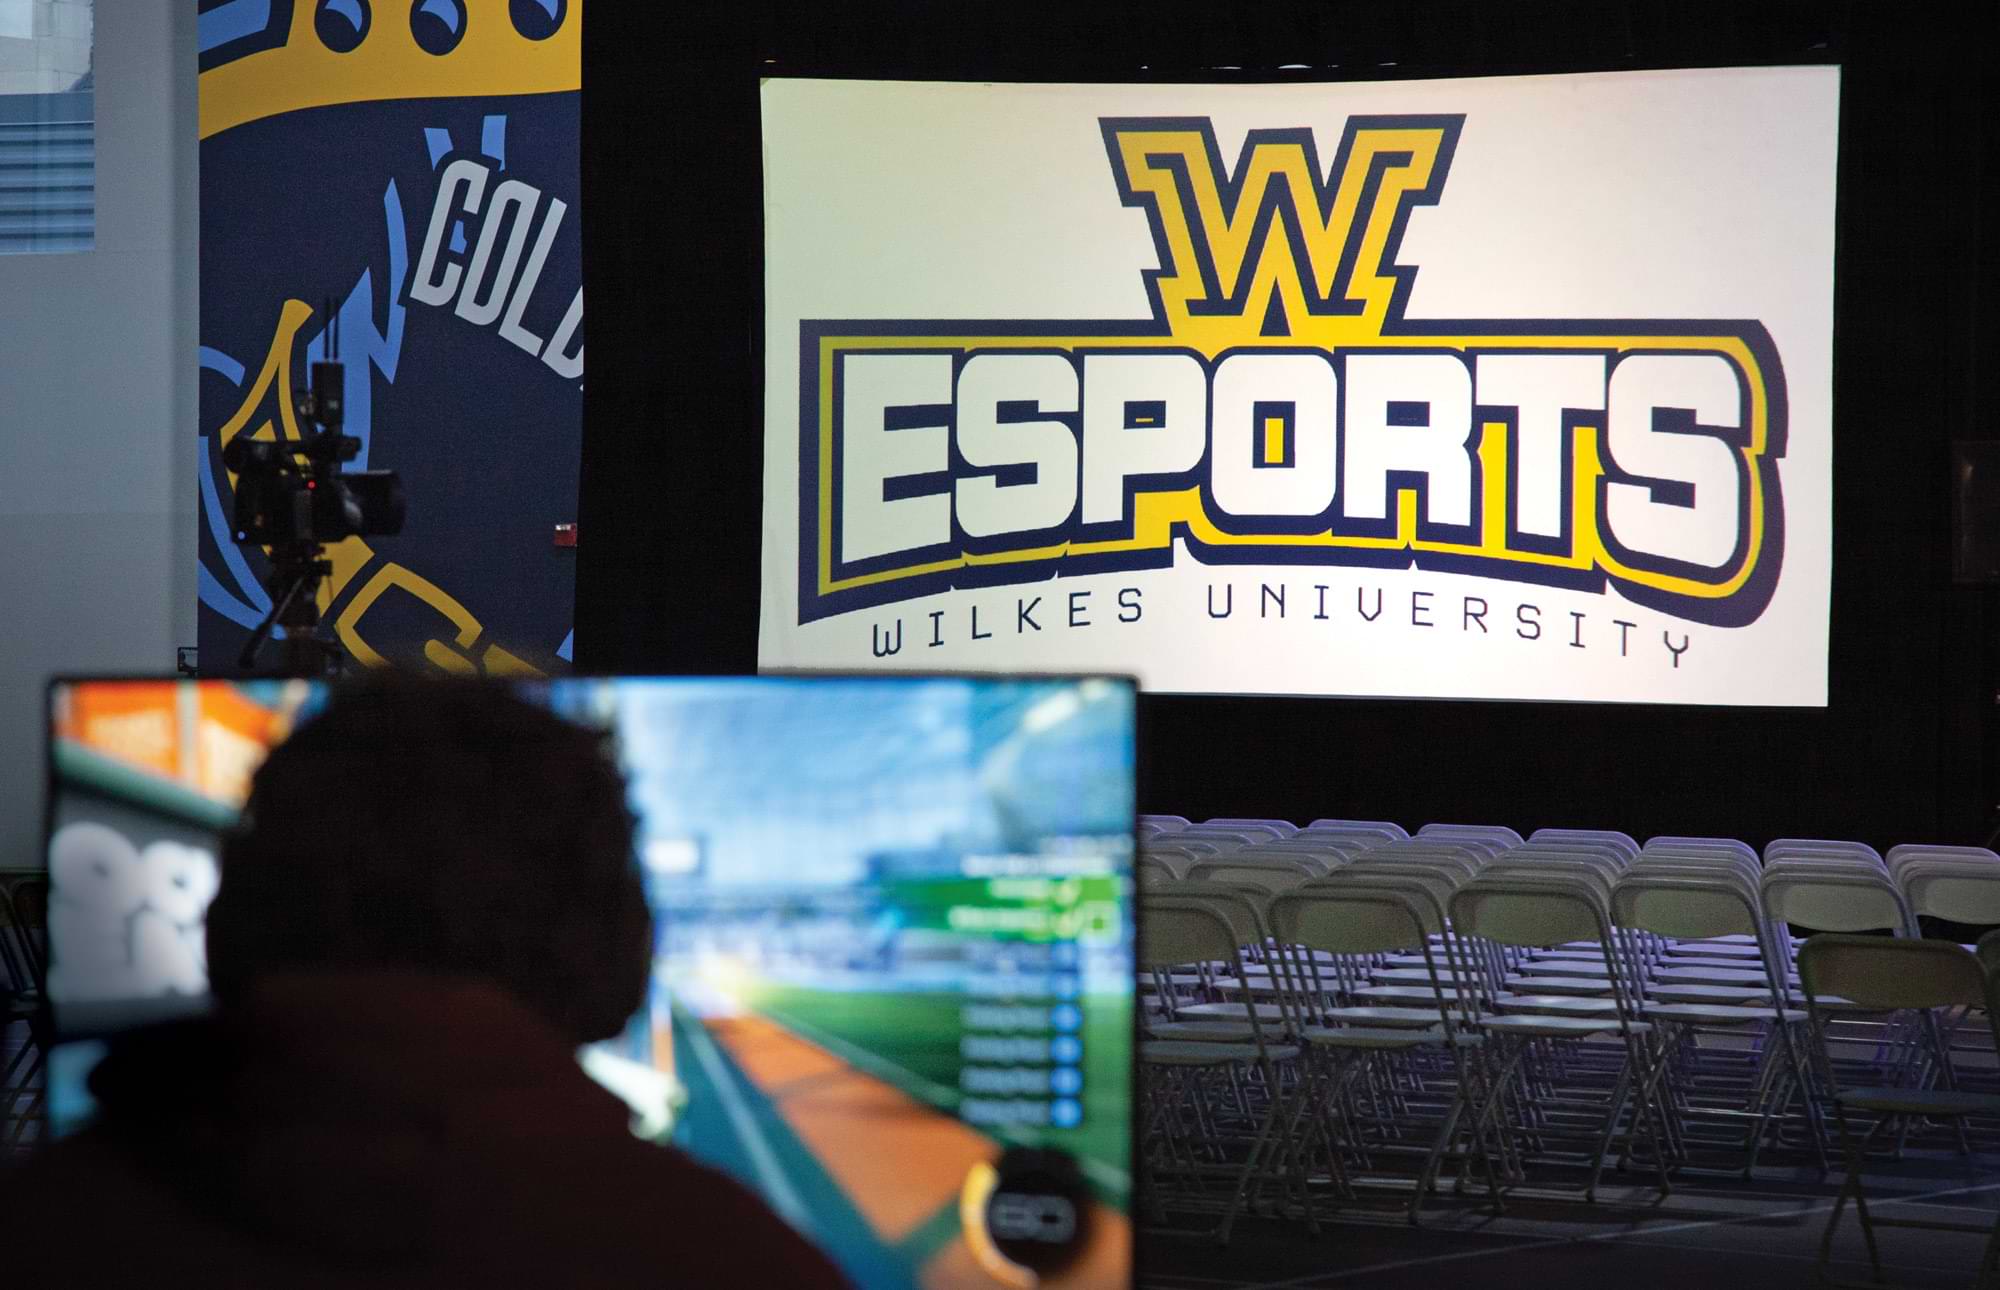 Wilkes esports logo on screen